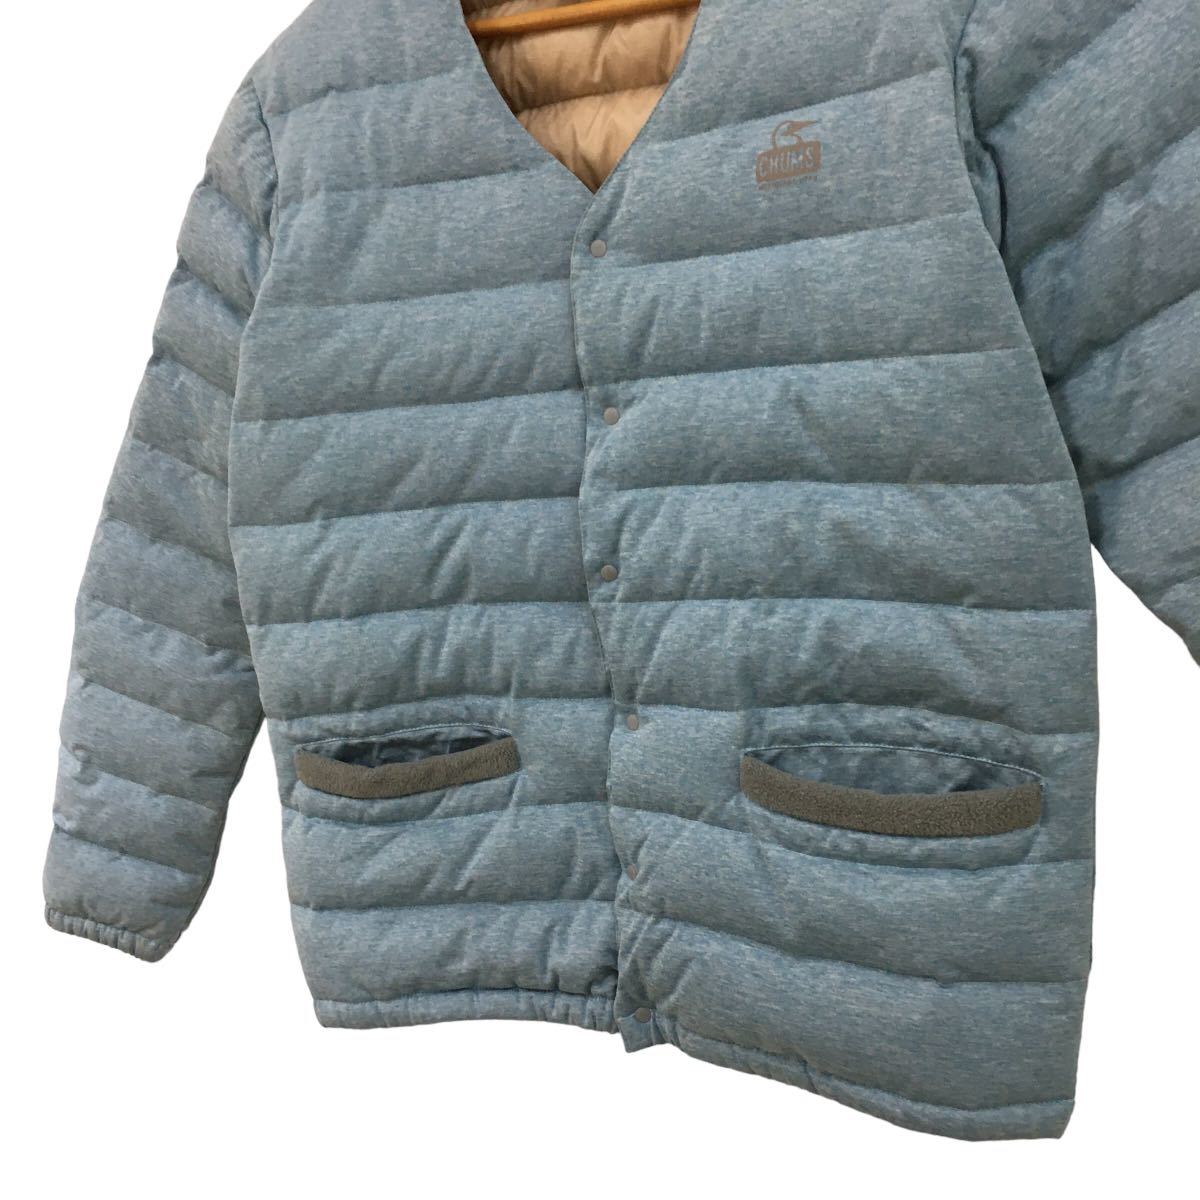 C313 CHUMS チャムス 中綿 ジャケット 上着 羽織り sample品 アウター コート ジャンパー 上着 トップス メンズ M ライトブルー 水色 _画像3